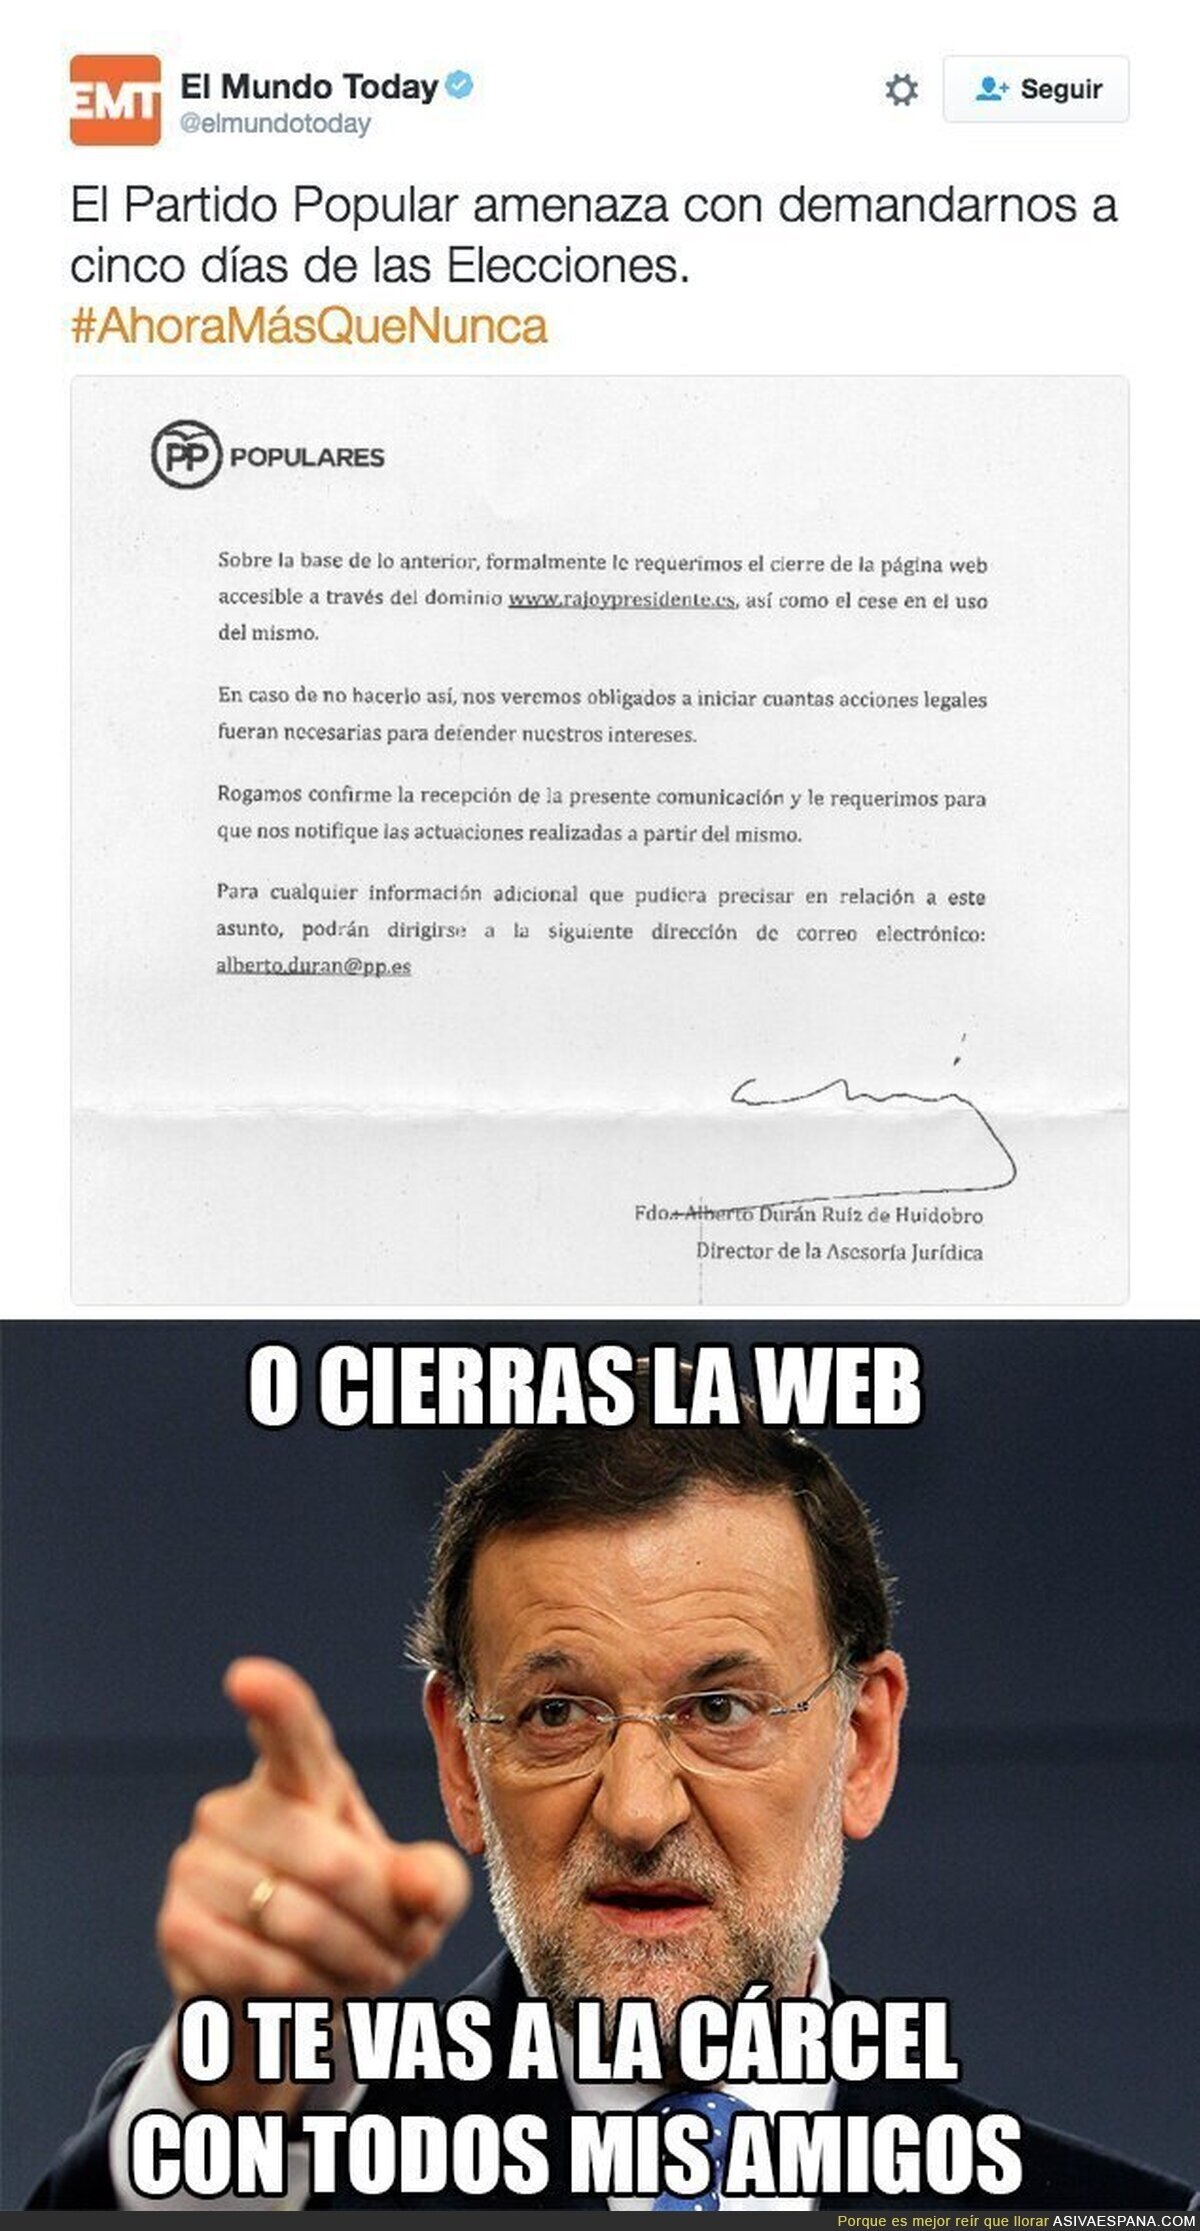 El Partido Popular amenaza a El Mundo Today con una demanda si no cierran la web "Rajoy Presidente"